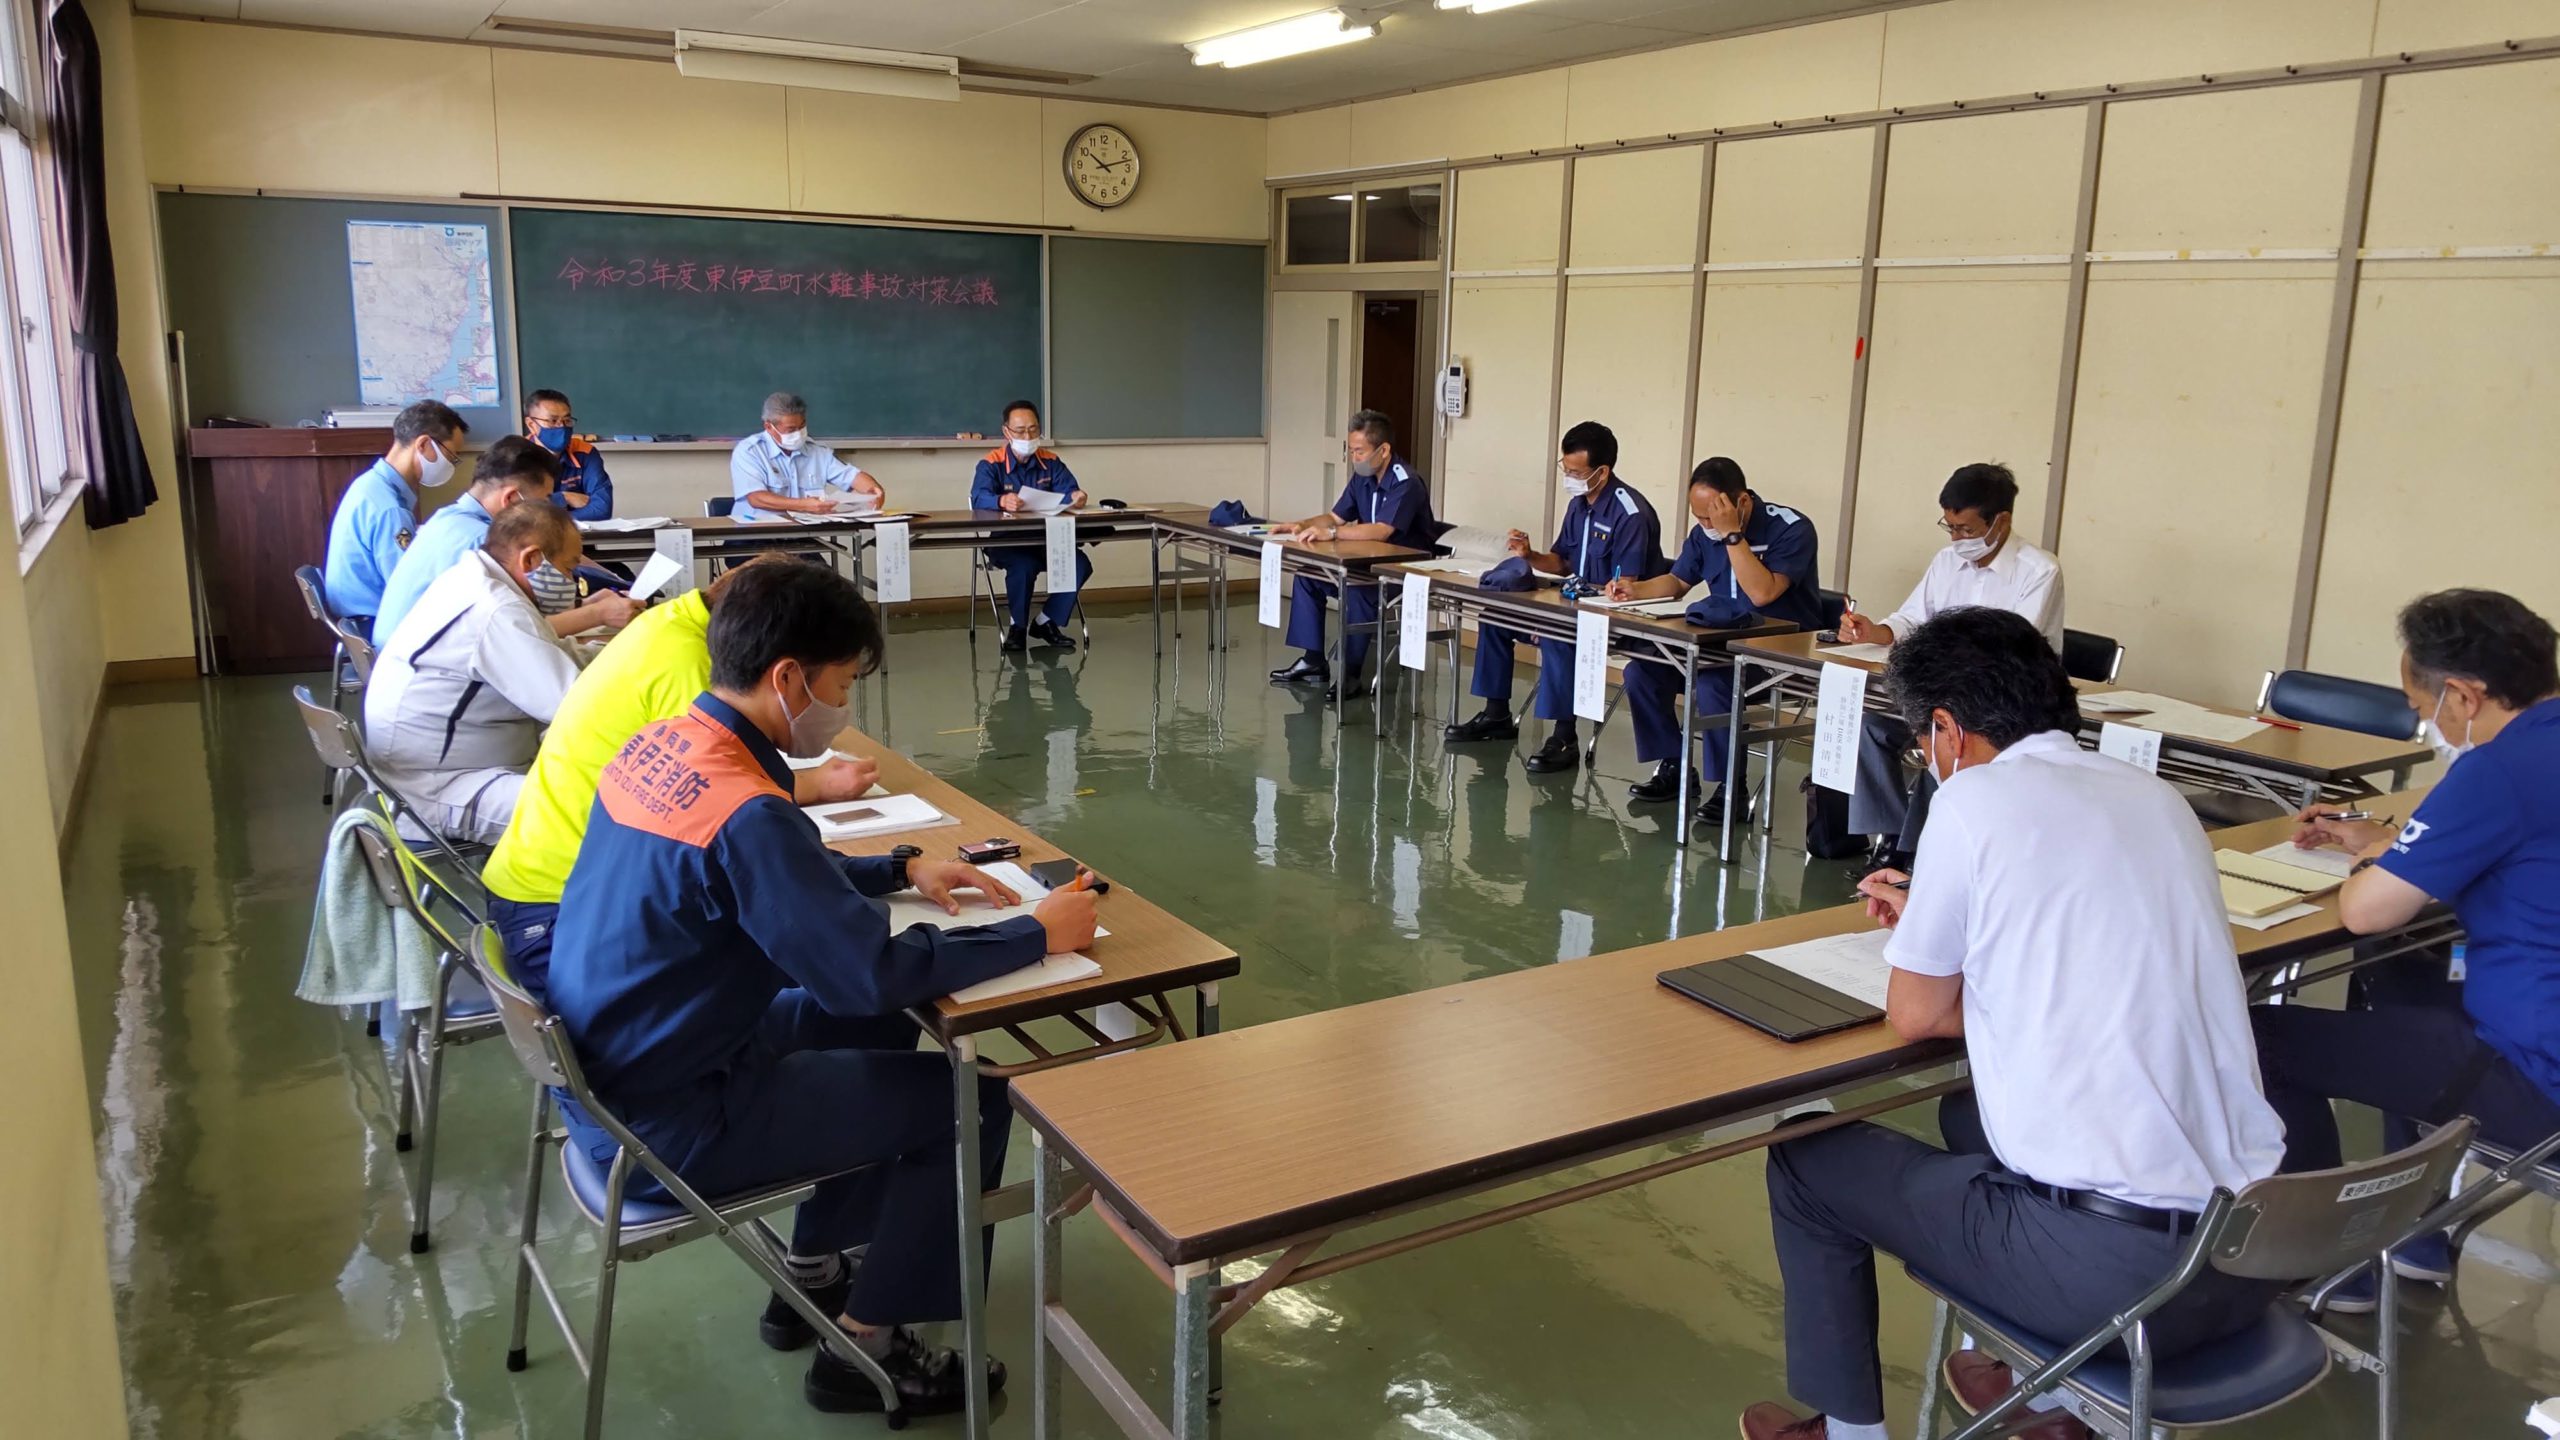 東伊豆町水難事故対策会議が開催されました